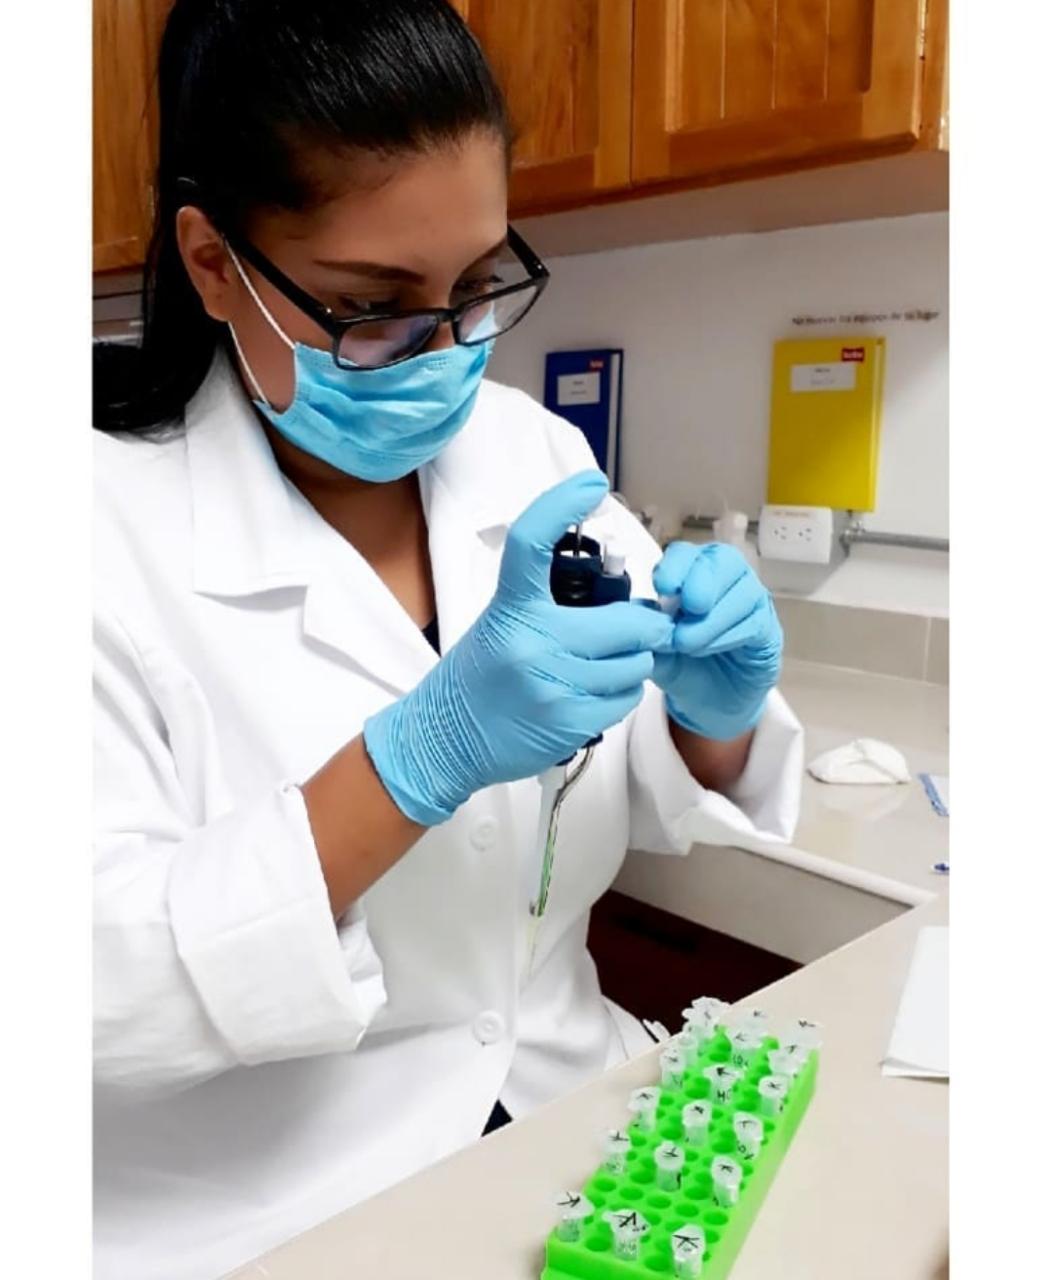 Integrantes del Departamento de Salud de ECOSUR exponen trabajos sobre perejil criollo y la chaya en el Congreso virtual de Bioquímica